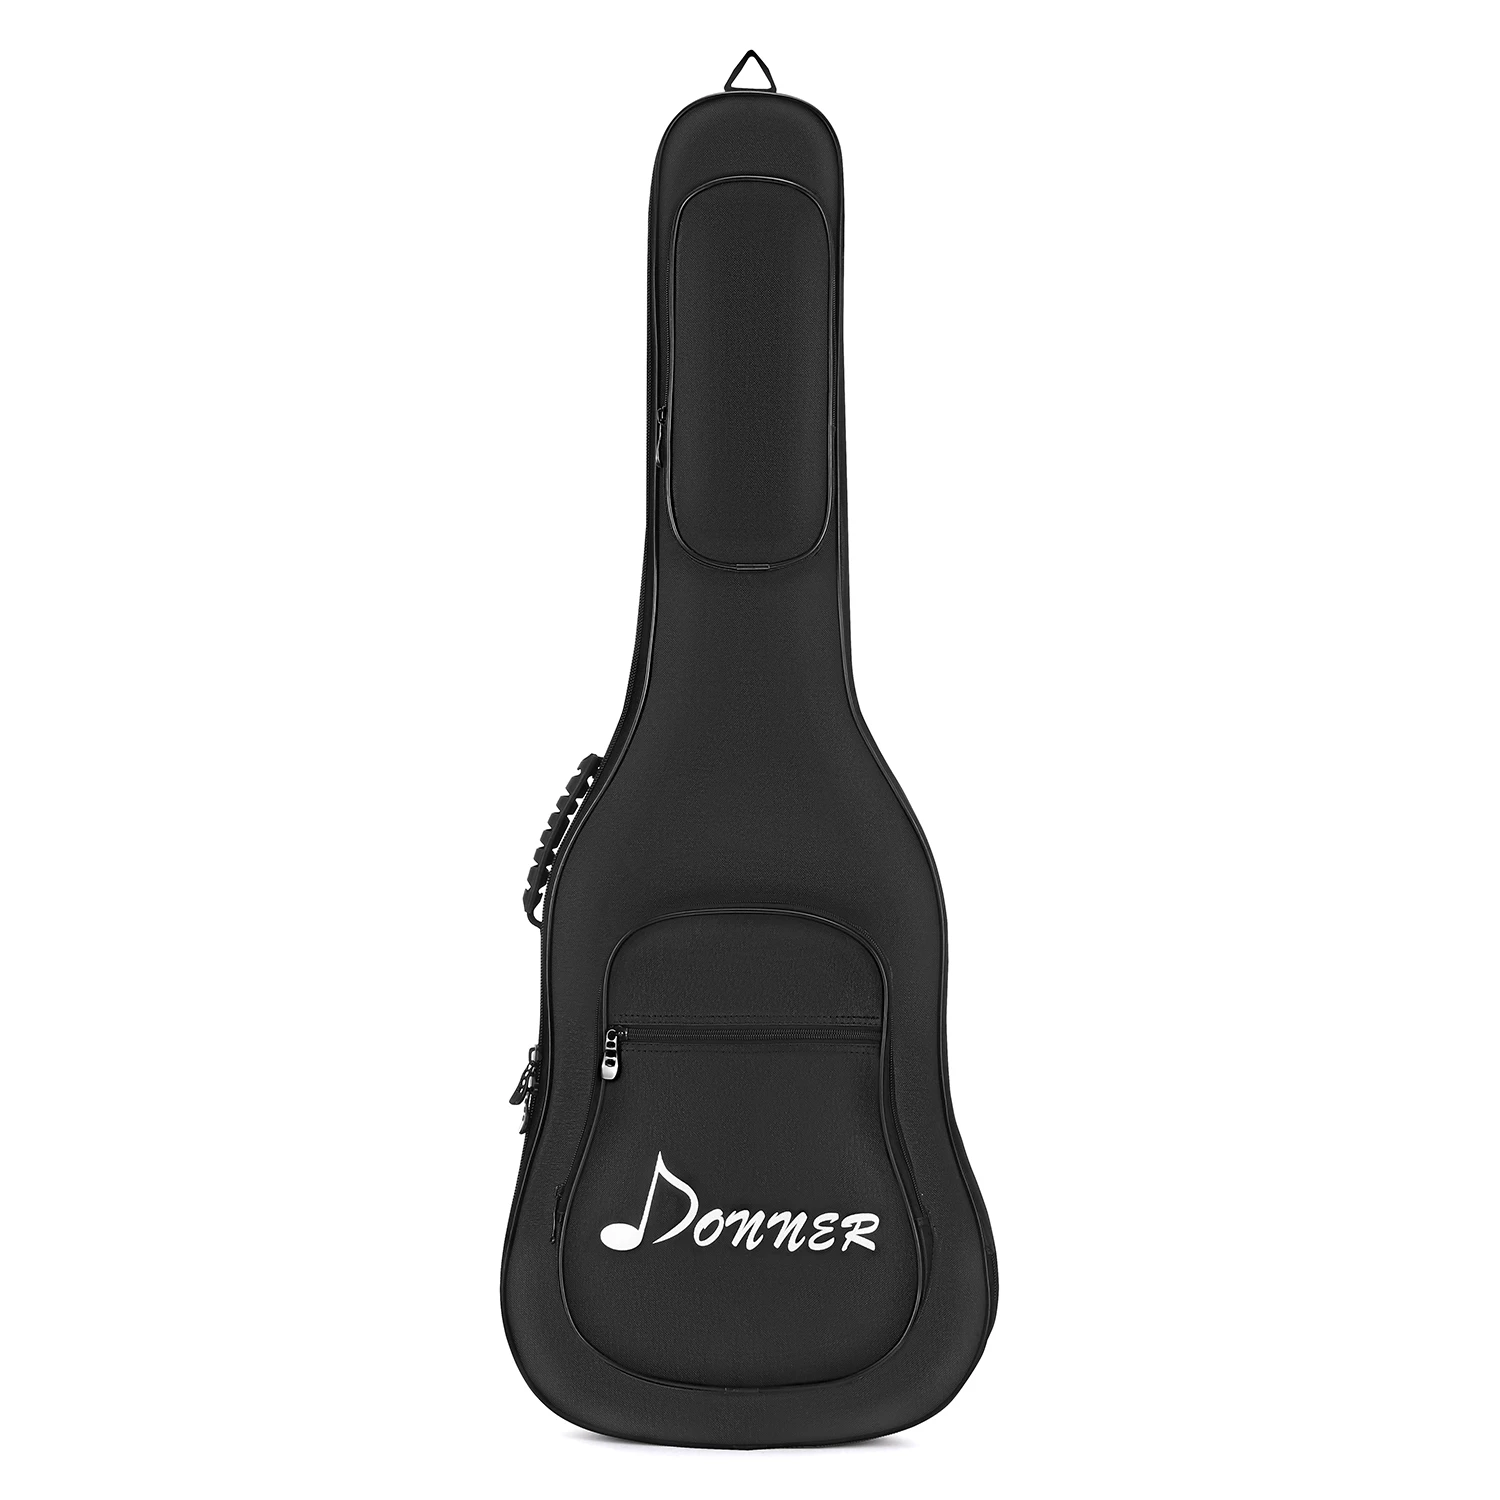 Donner 39 дюймов Премиум электрическая бас гитара Gig сумка рюкзак чехол водостойкий нетканый внутренний уплотненный губчатый коврик